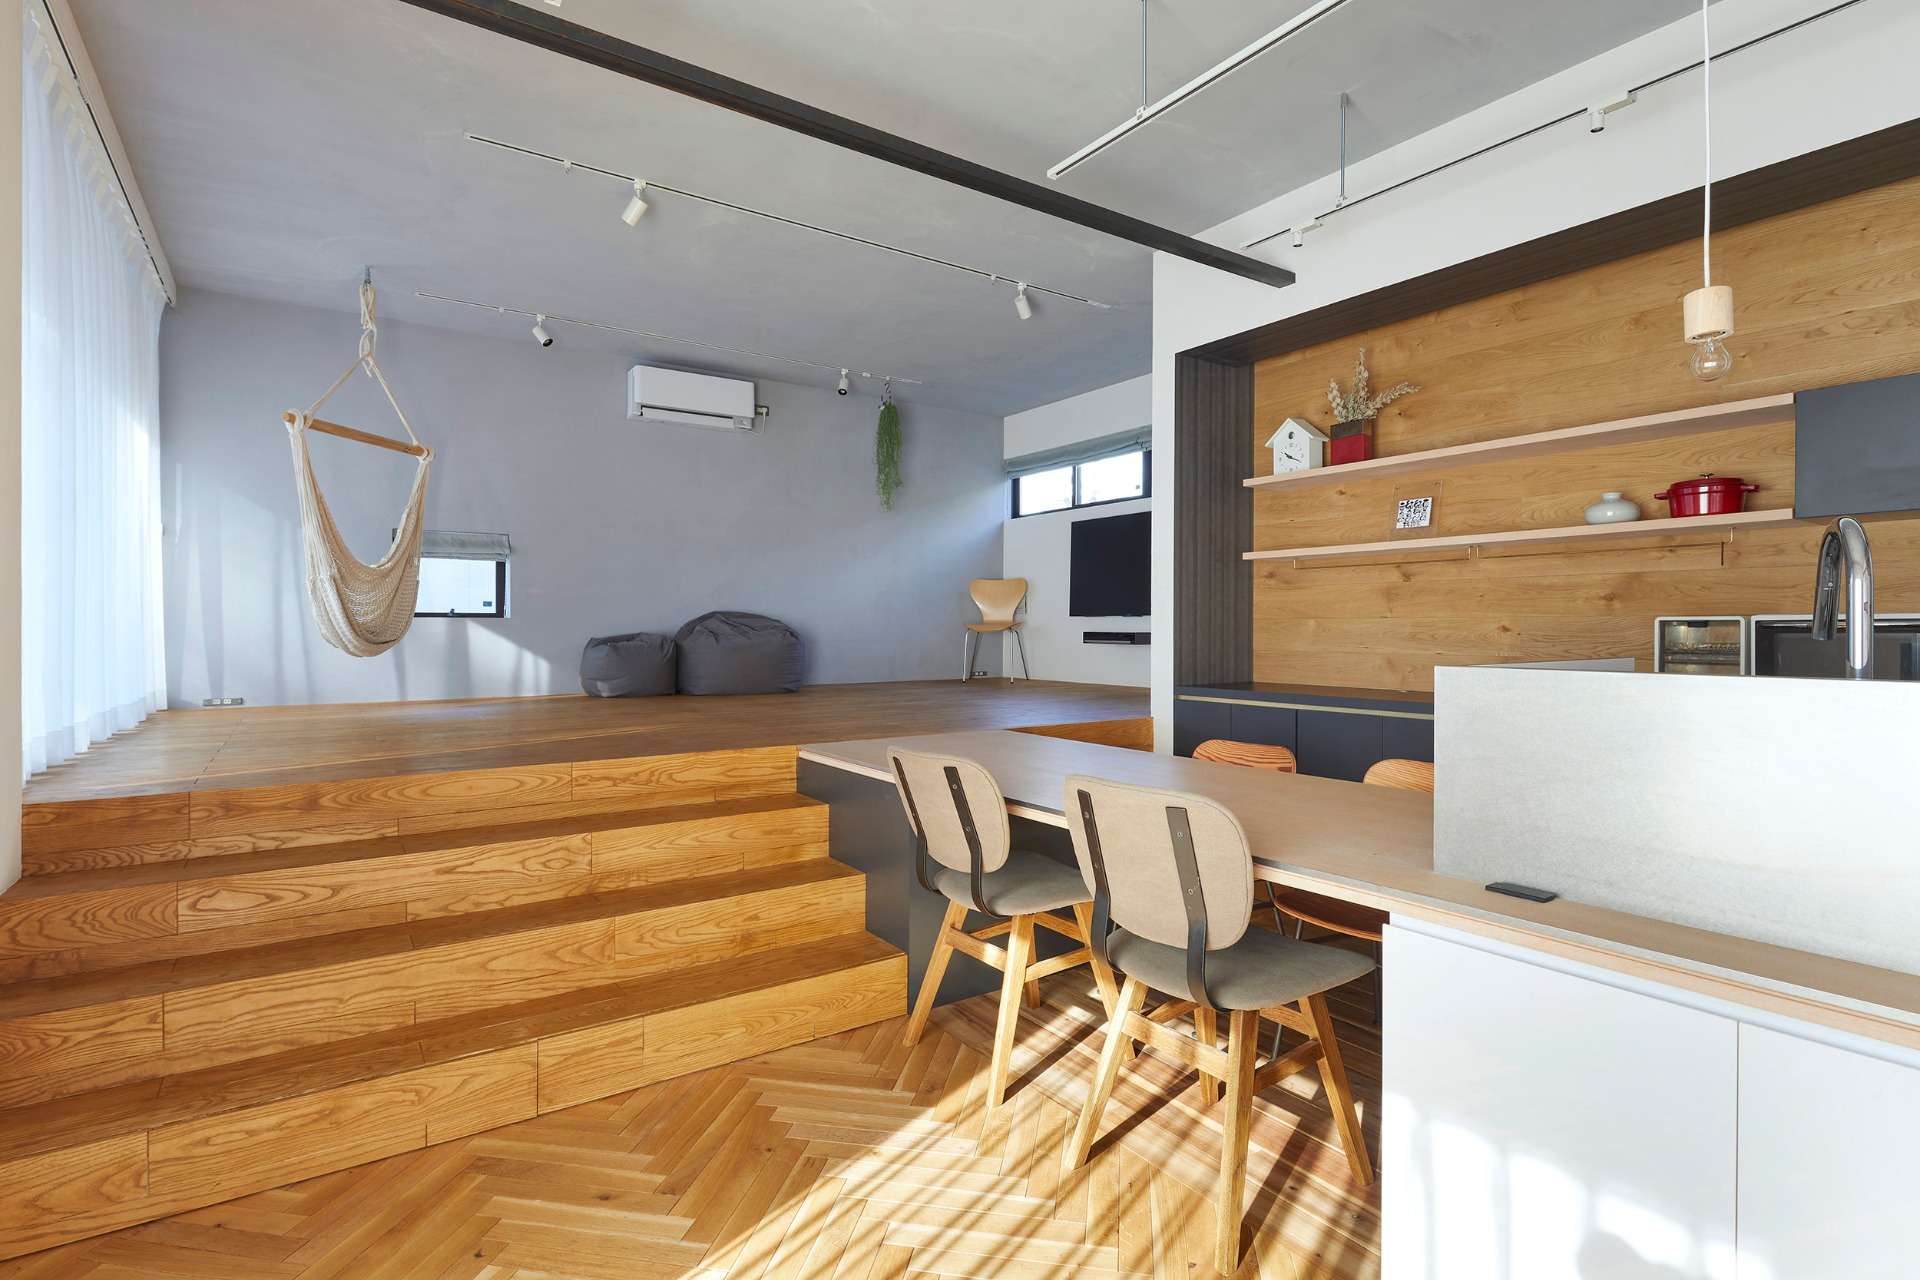 福山市でおしゃれな注文住宅の設計、デザイン住宅は設計事務所asazu design office